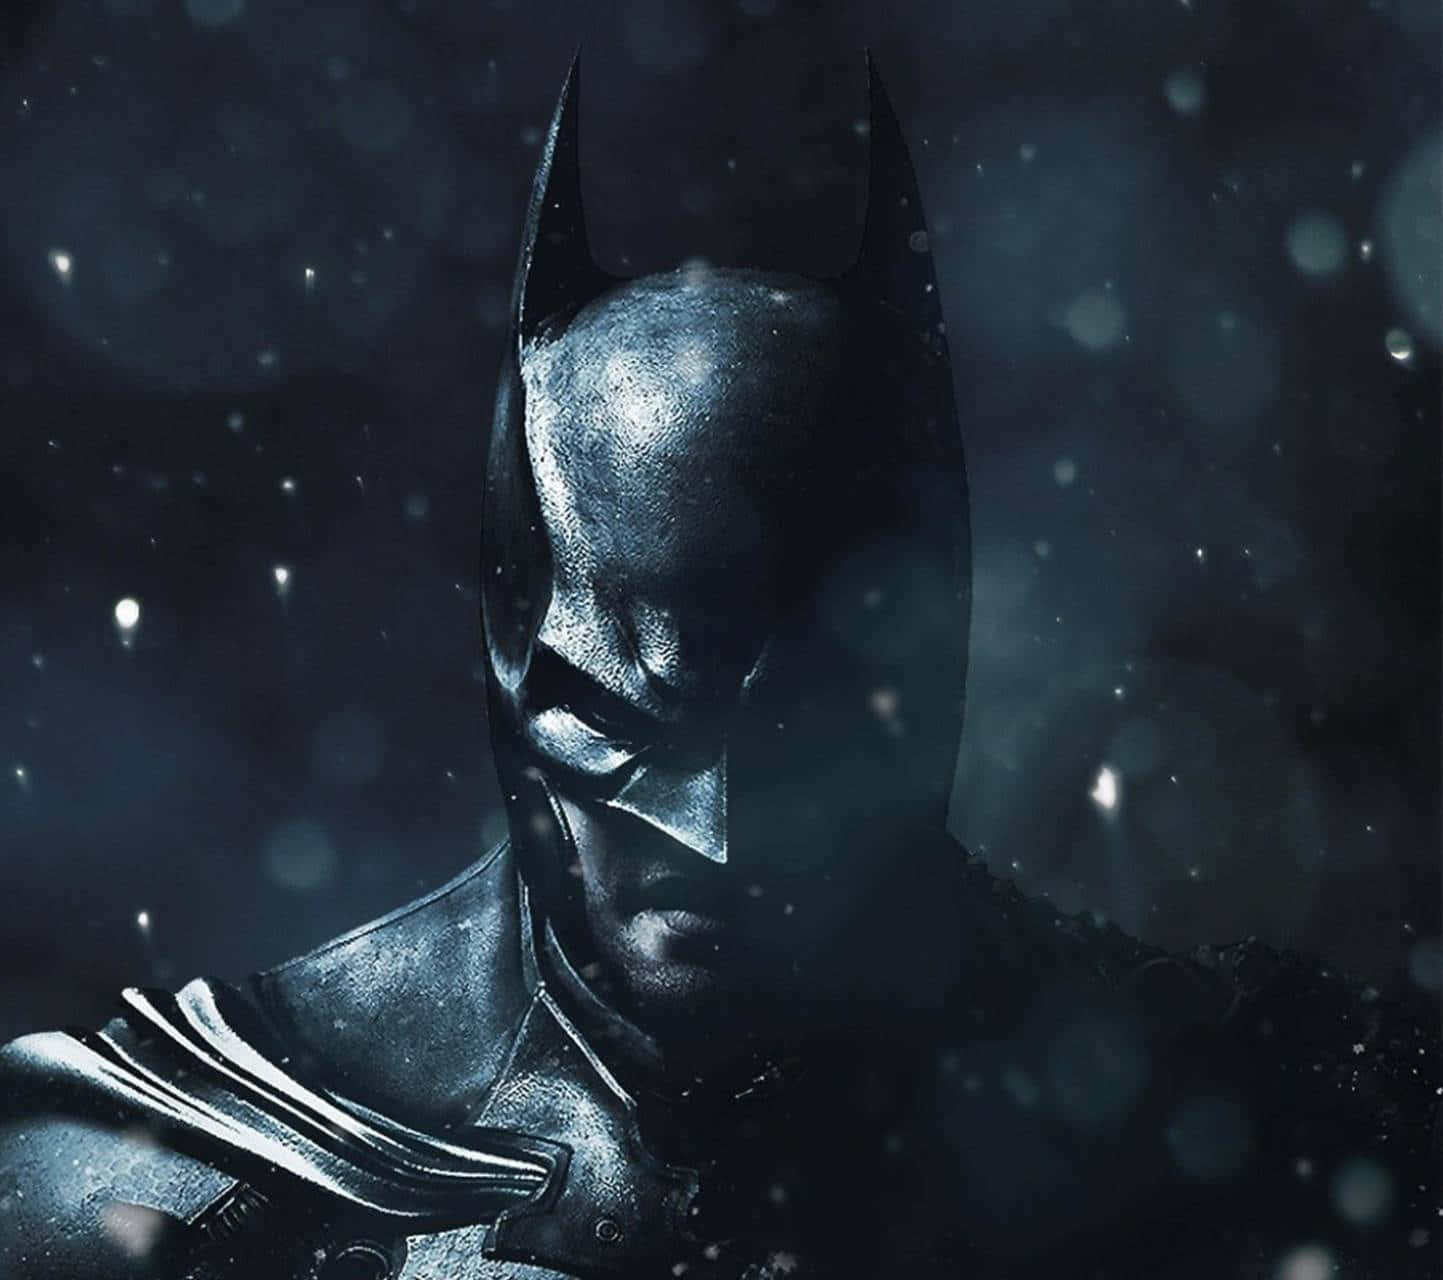 Imagende Batman En Primer Plano Durante La Nieve